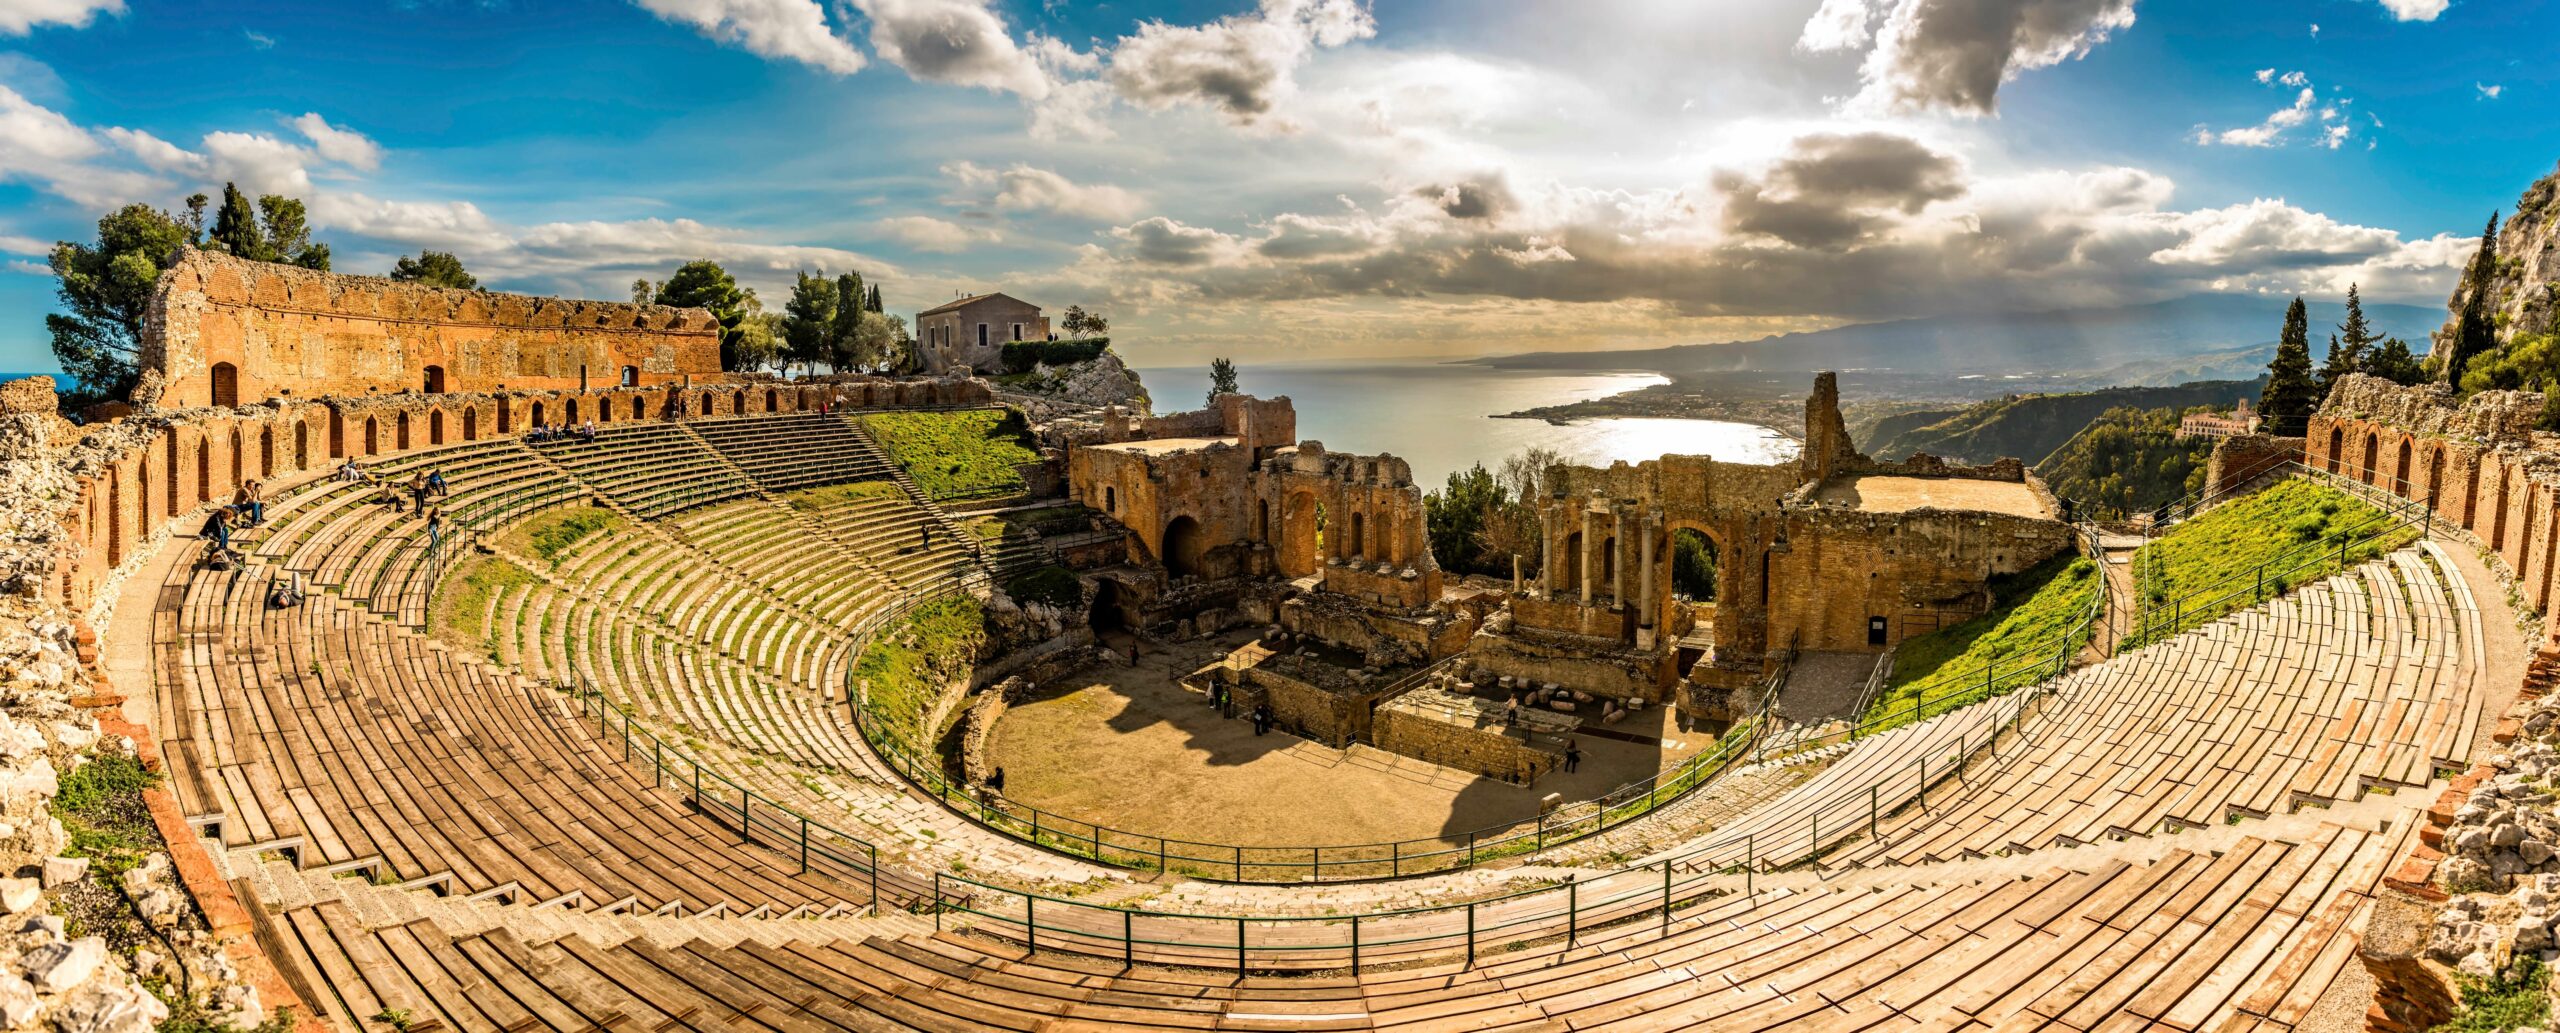 Det græske teater i Taormina. Fotograf: Det græske teater i Taormina